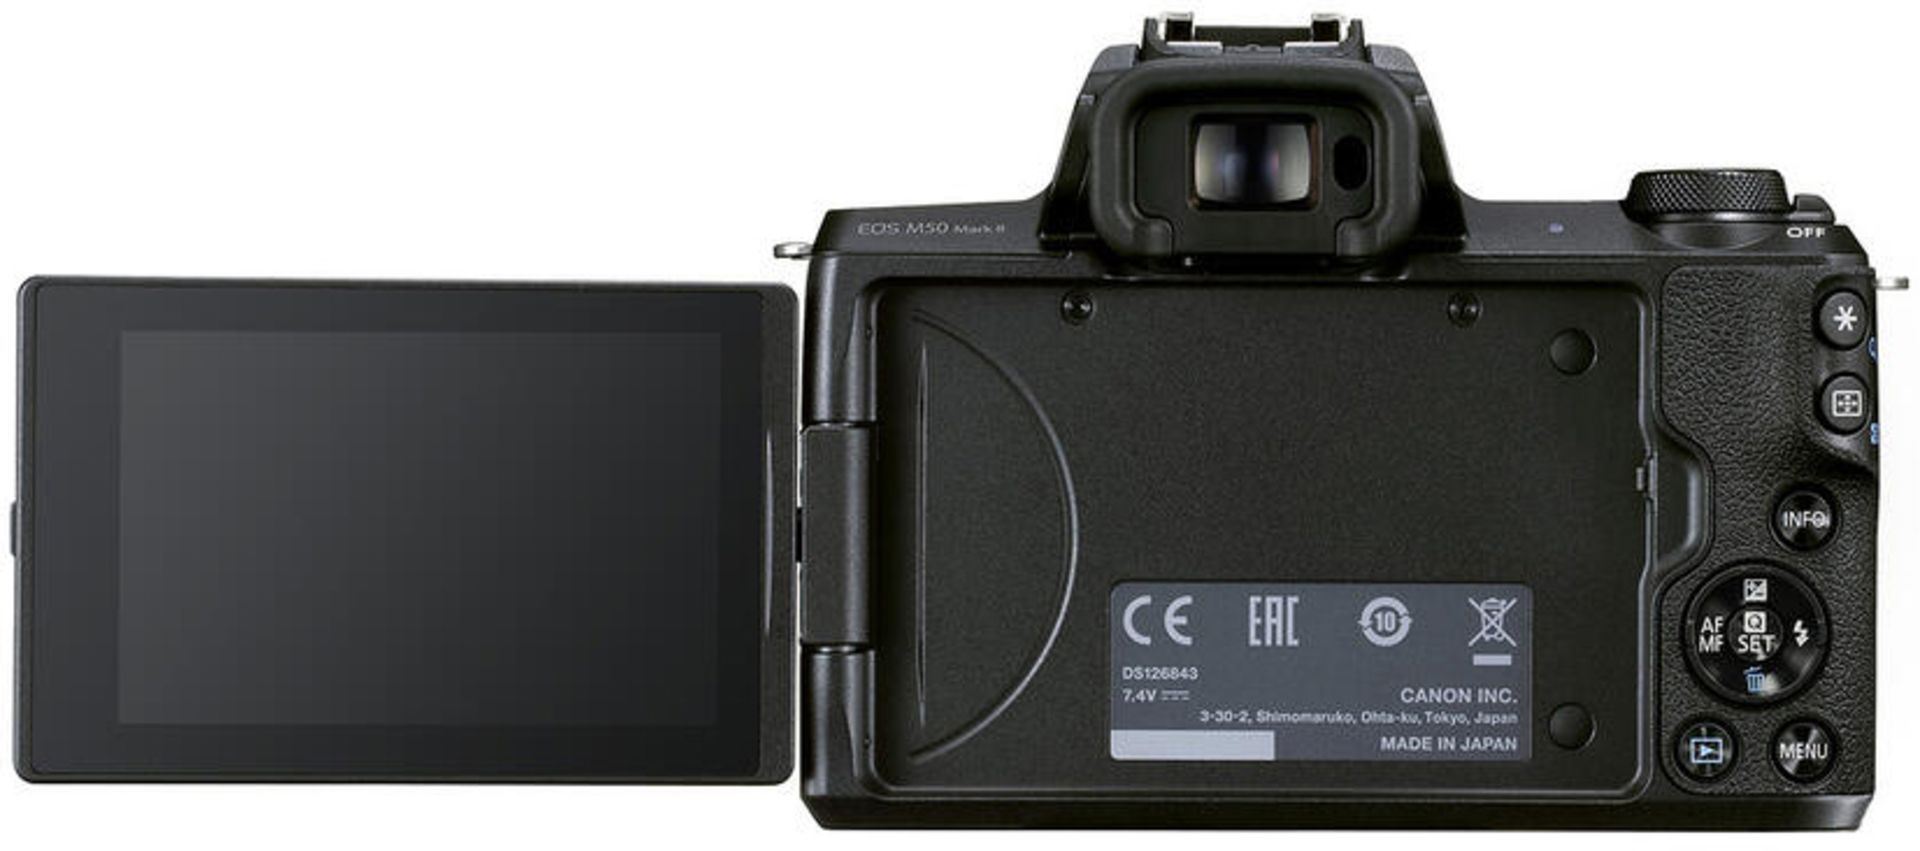 بخش پشتی دوربین APS-C کانن EOS M50 Mark II نمایشگر LCD و منظره یاب